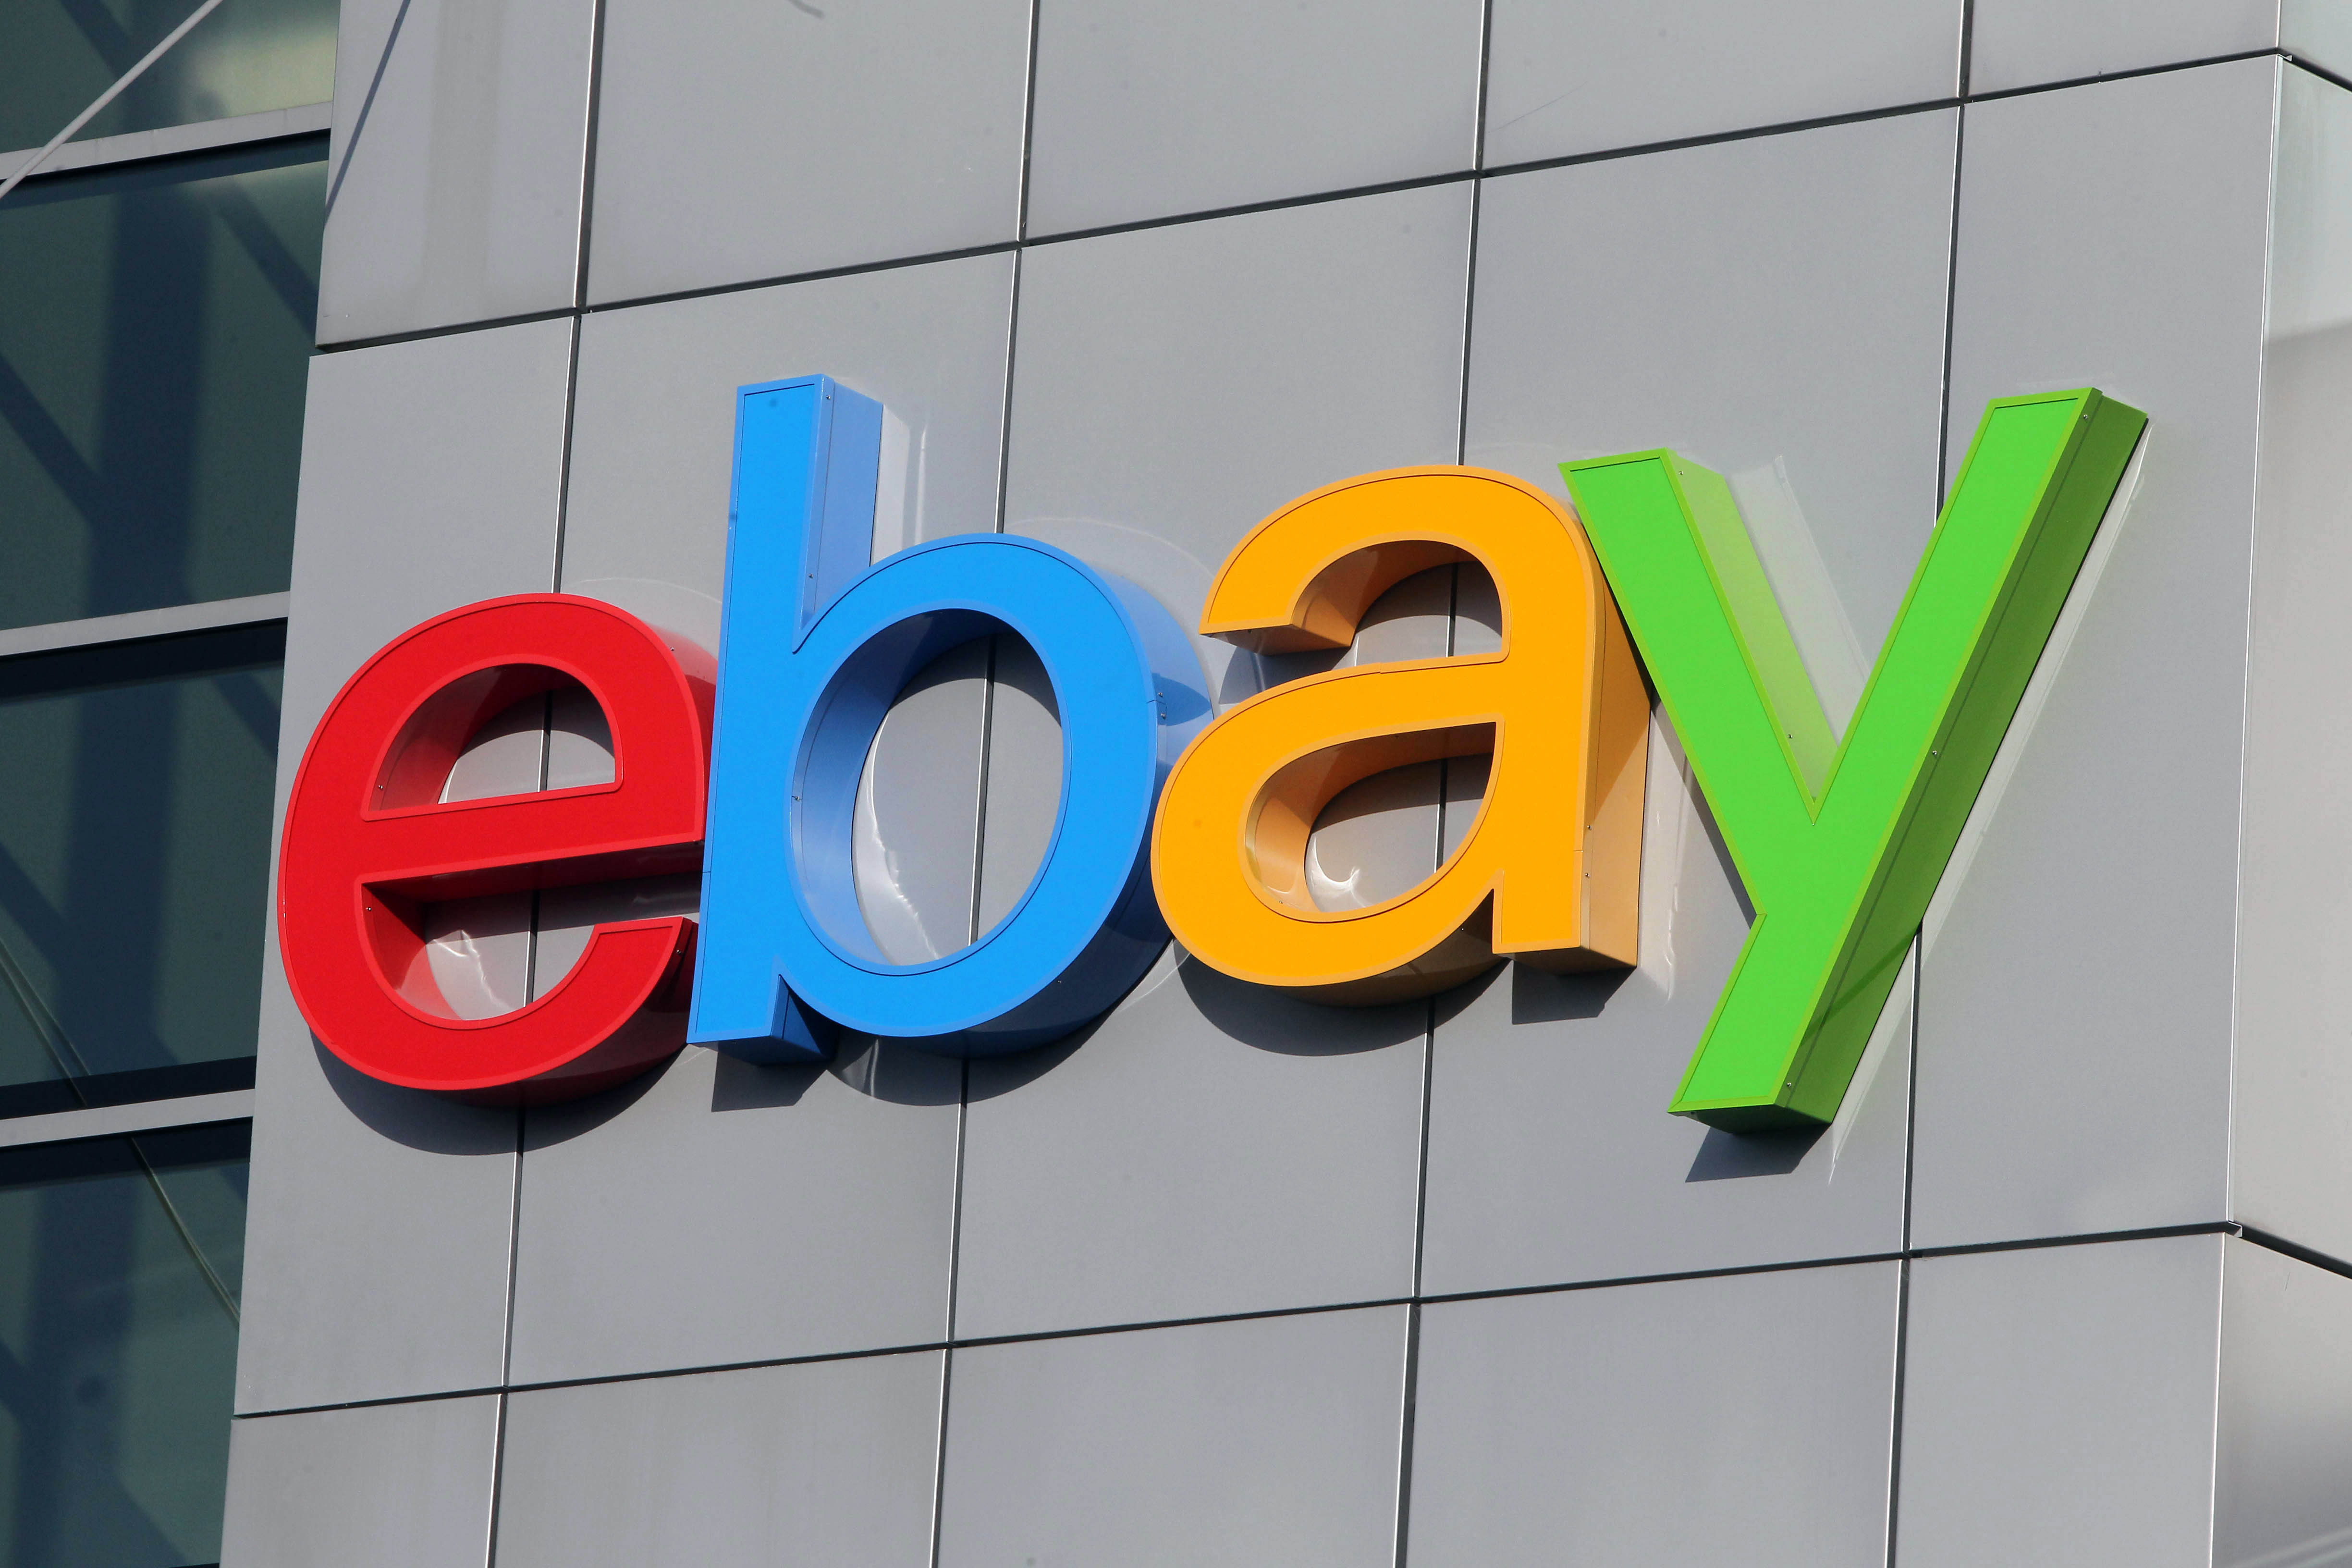 ebay quiere facilitarte el confinamiento con un cupón de 5 € de descuento